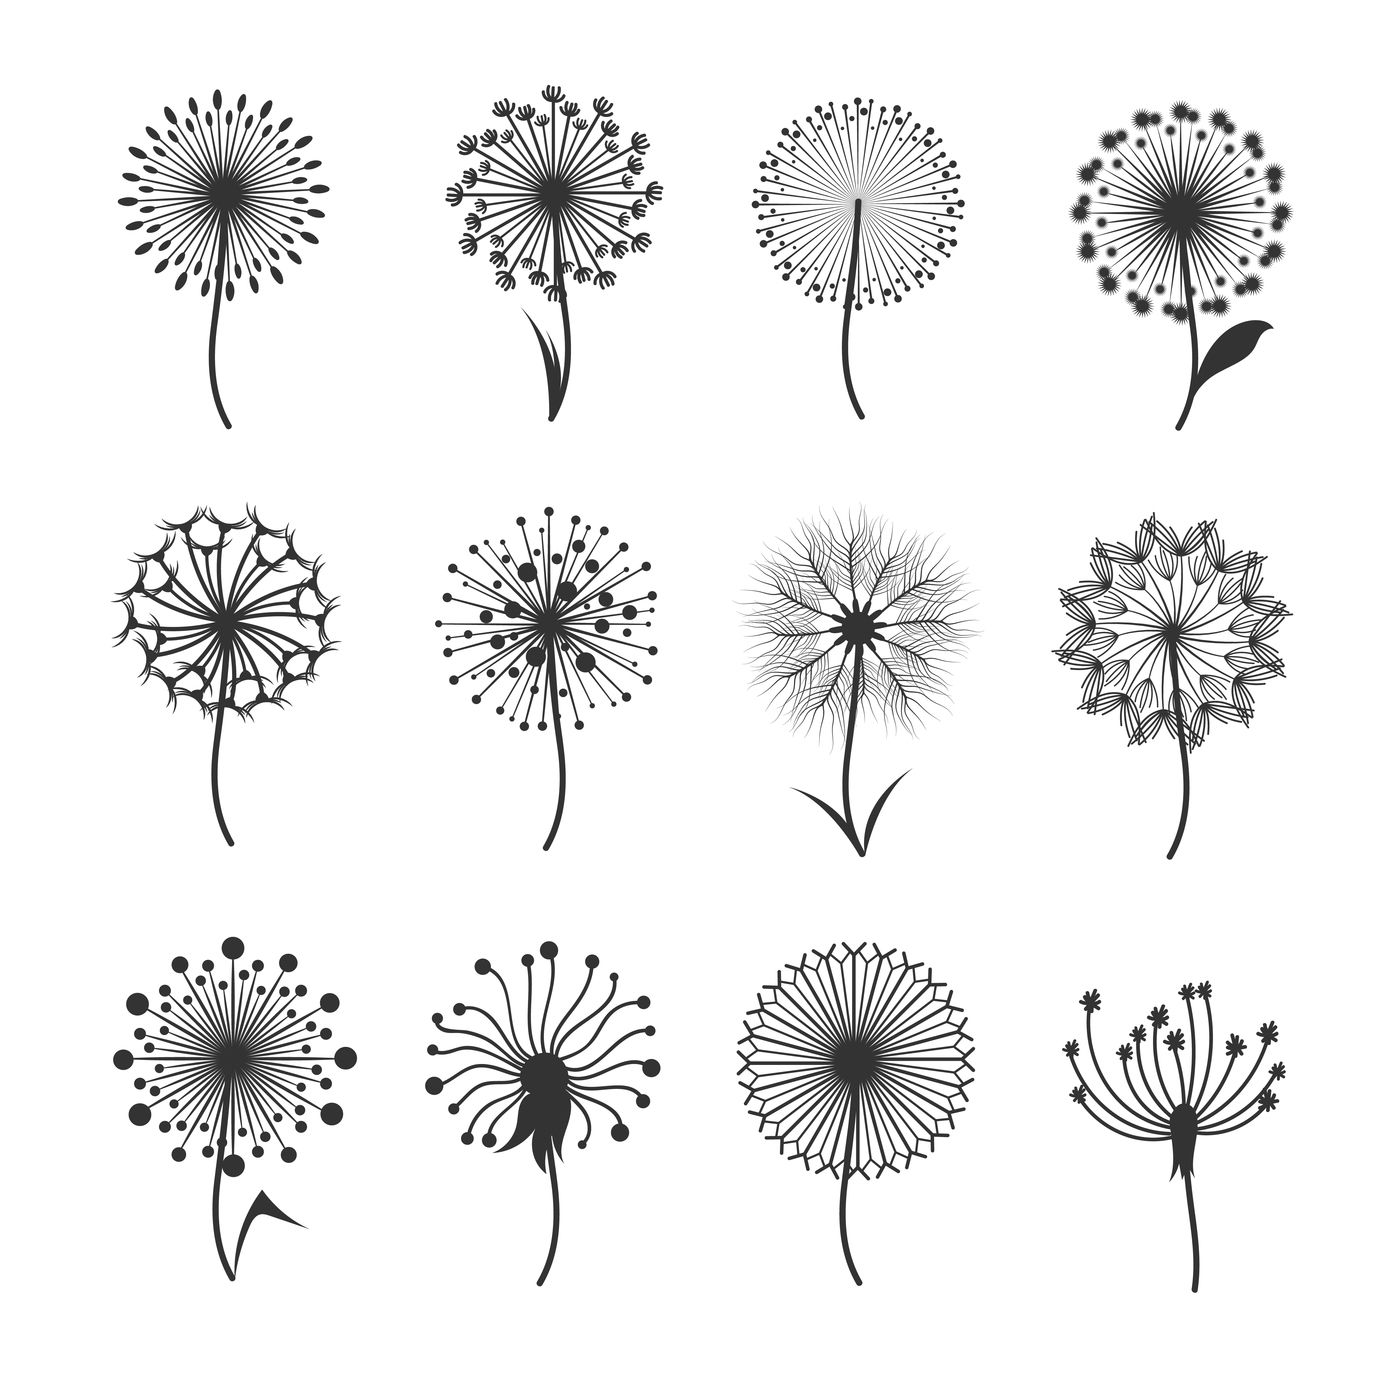 Vector Black And White Dandelion Floral Pattern Of Spirals, Swirls